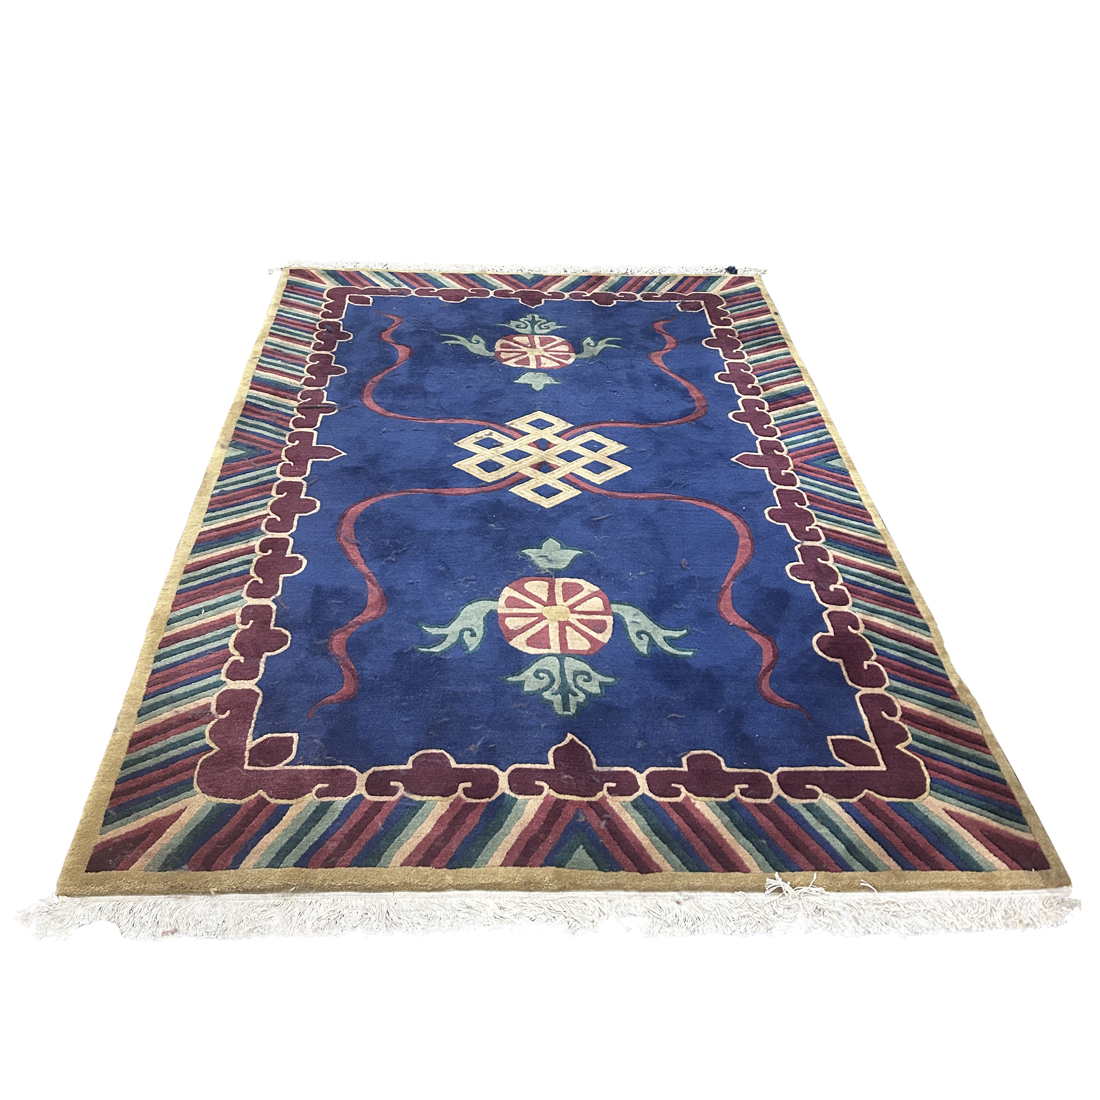 A NEPALESE CARPET A Nepalese carpet  3a12f9